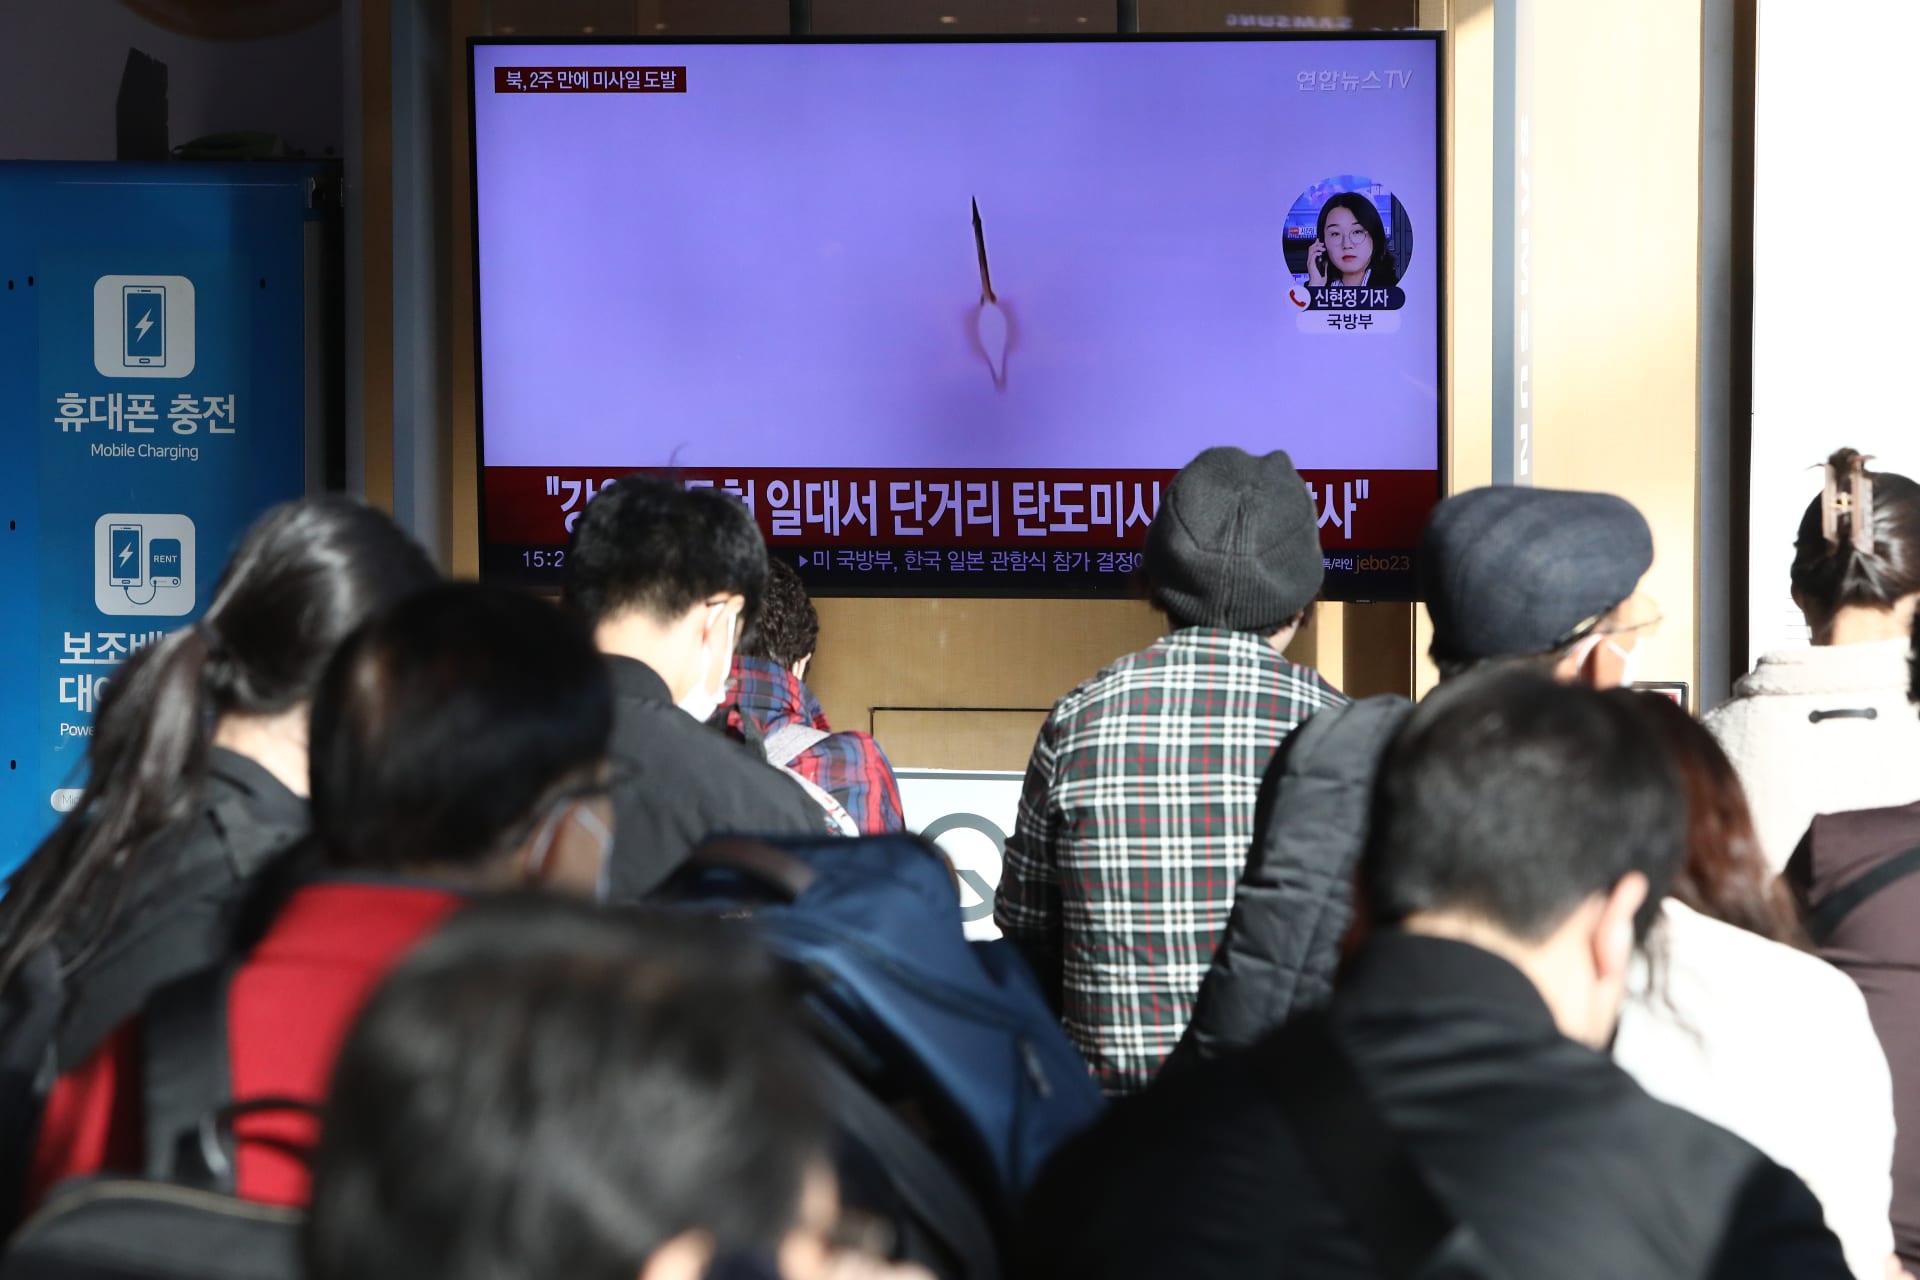 كوريا الجنوبية تعلن إطلاق بيونغ يانغ صاروخا باليستيا.. واليابان تحذر